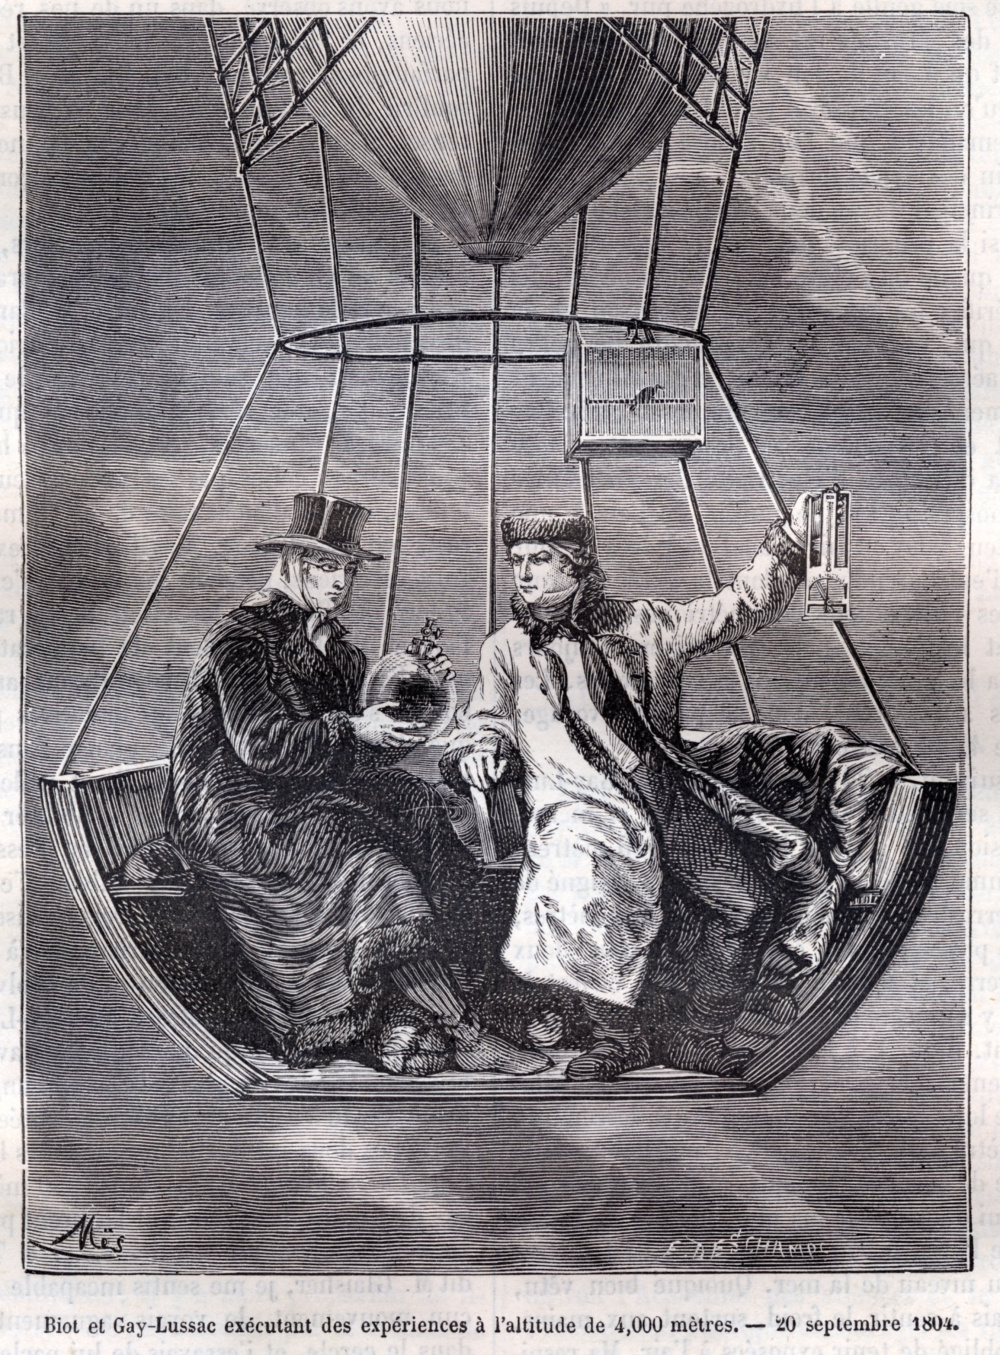 Biot et Gay-Lussac exécutant des expériences à l'altitude de 4 000 mètres le 20 septembre 1804. Extrait de "La Nature" 1874, p. 328